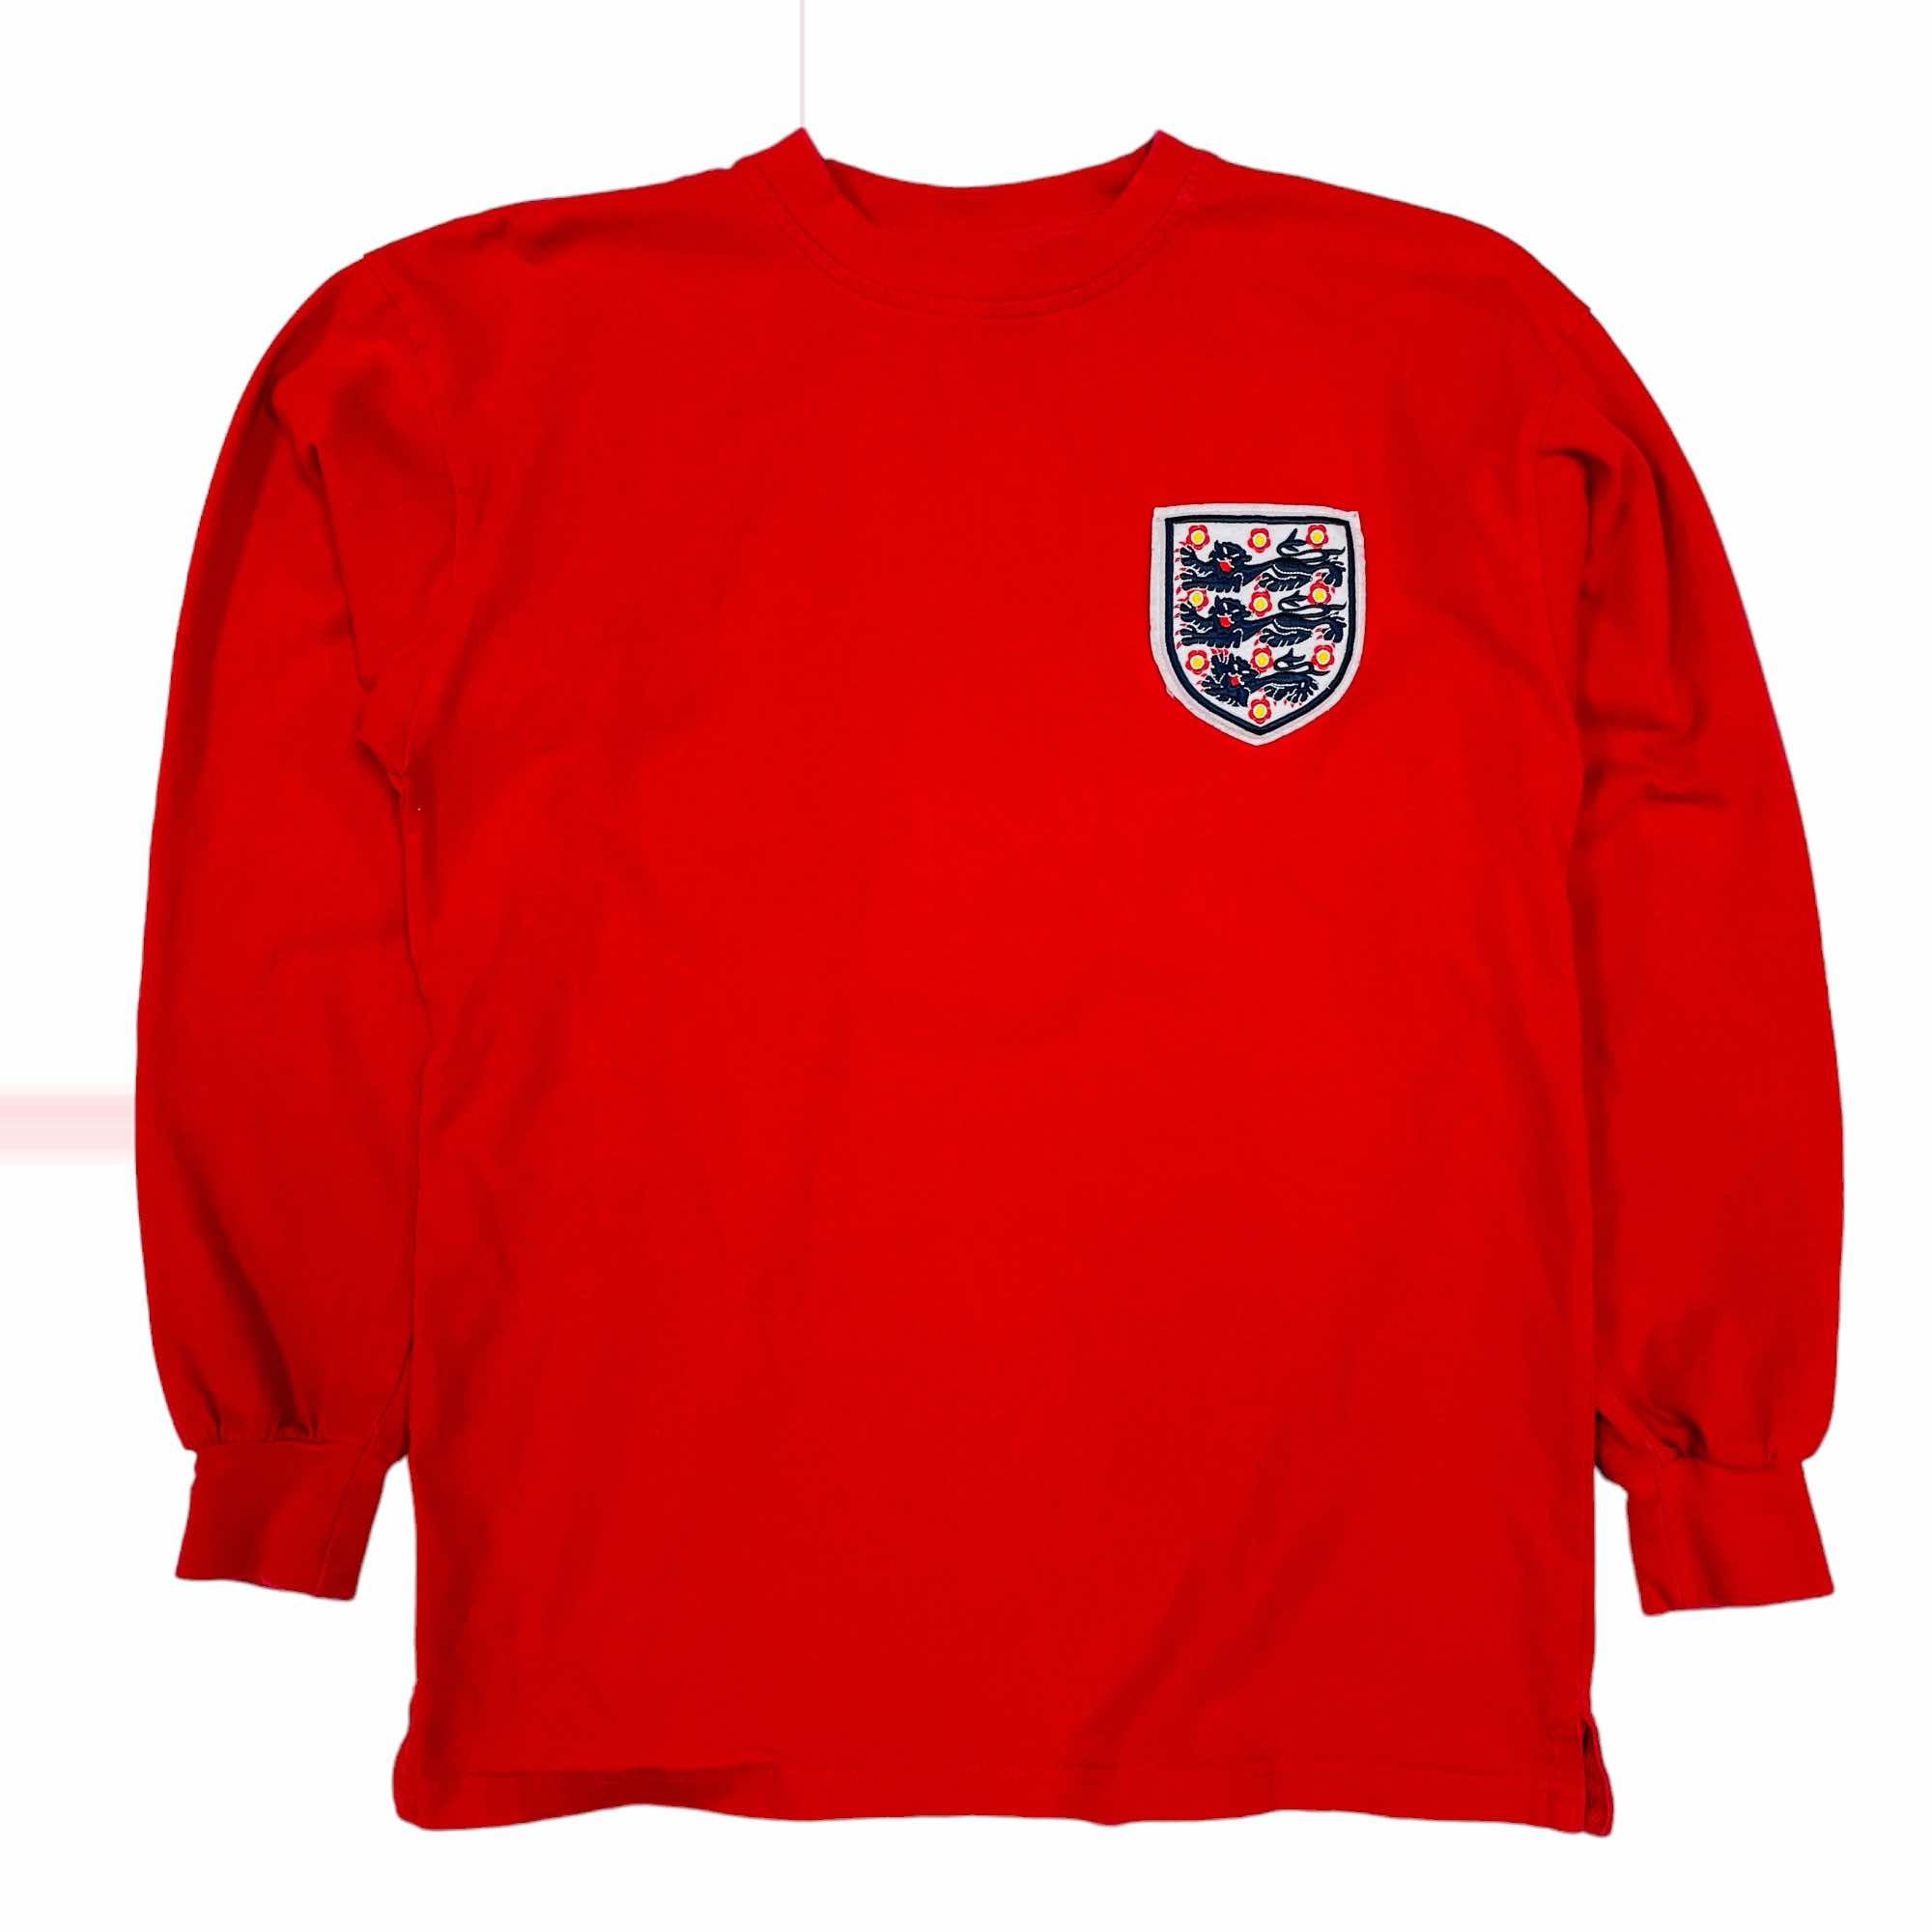 England 1966 Replica Shirt - Medium